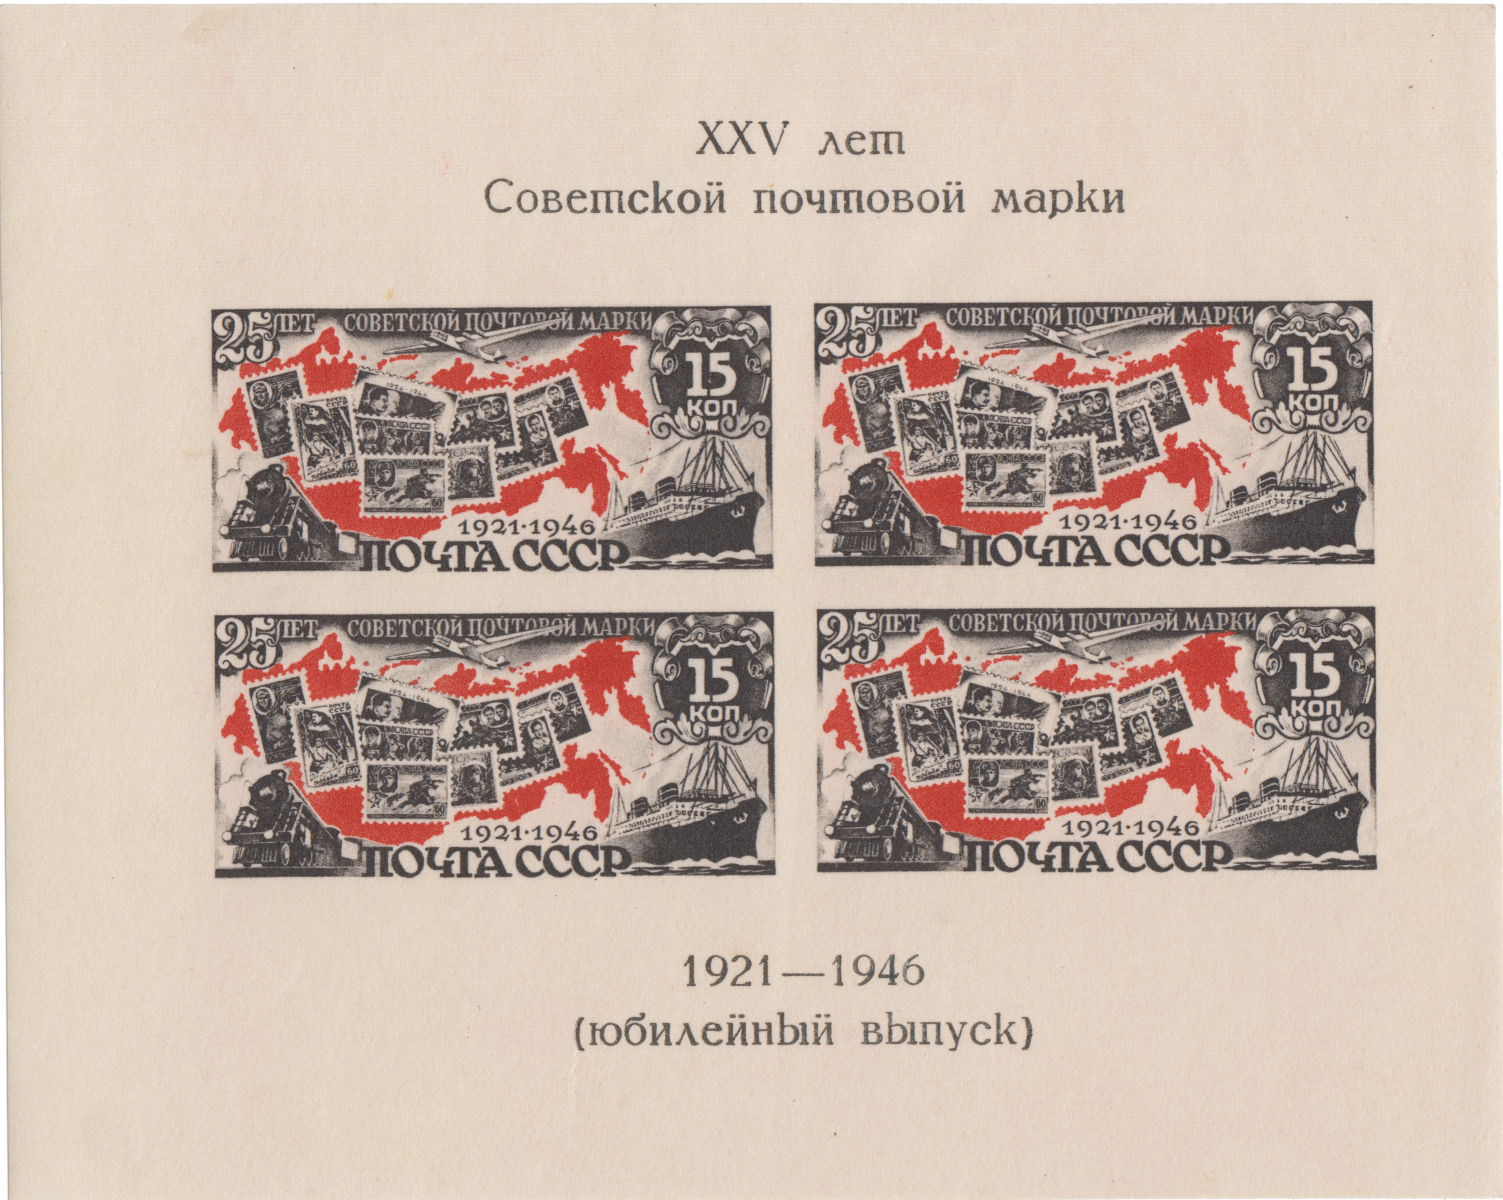 Изображения советских почтовых марок на фоне карты СССР